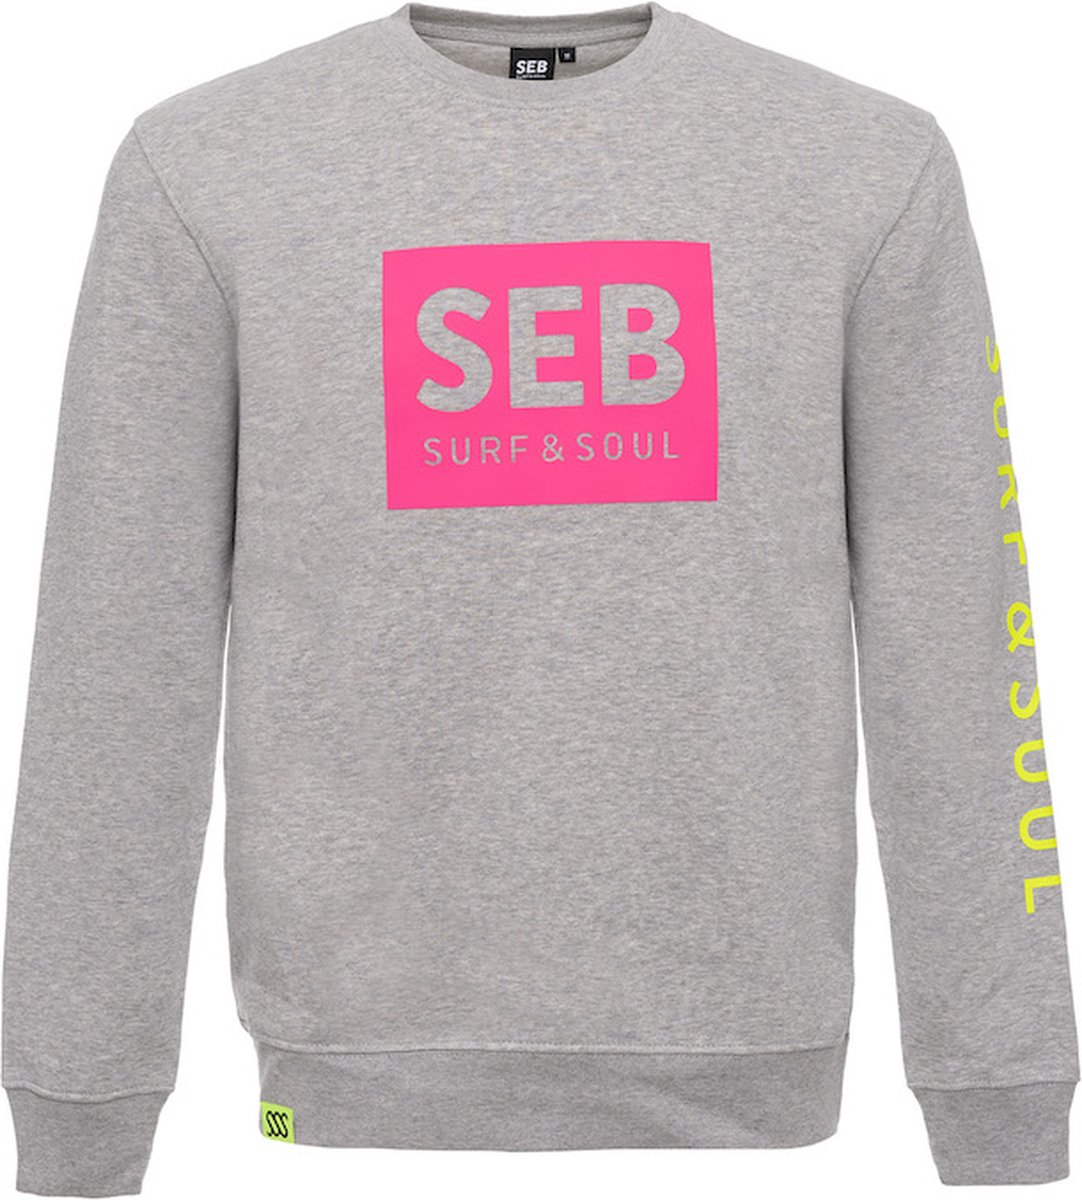 SEB Sweater Grey - Neon Pink | Trui - Heren - Grijs - Grey melange - Neon - Organisch katoen